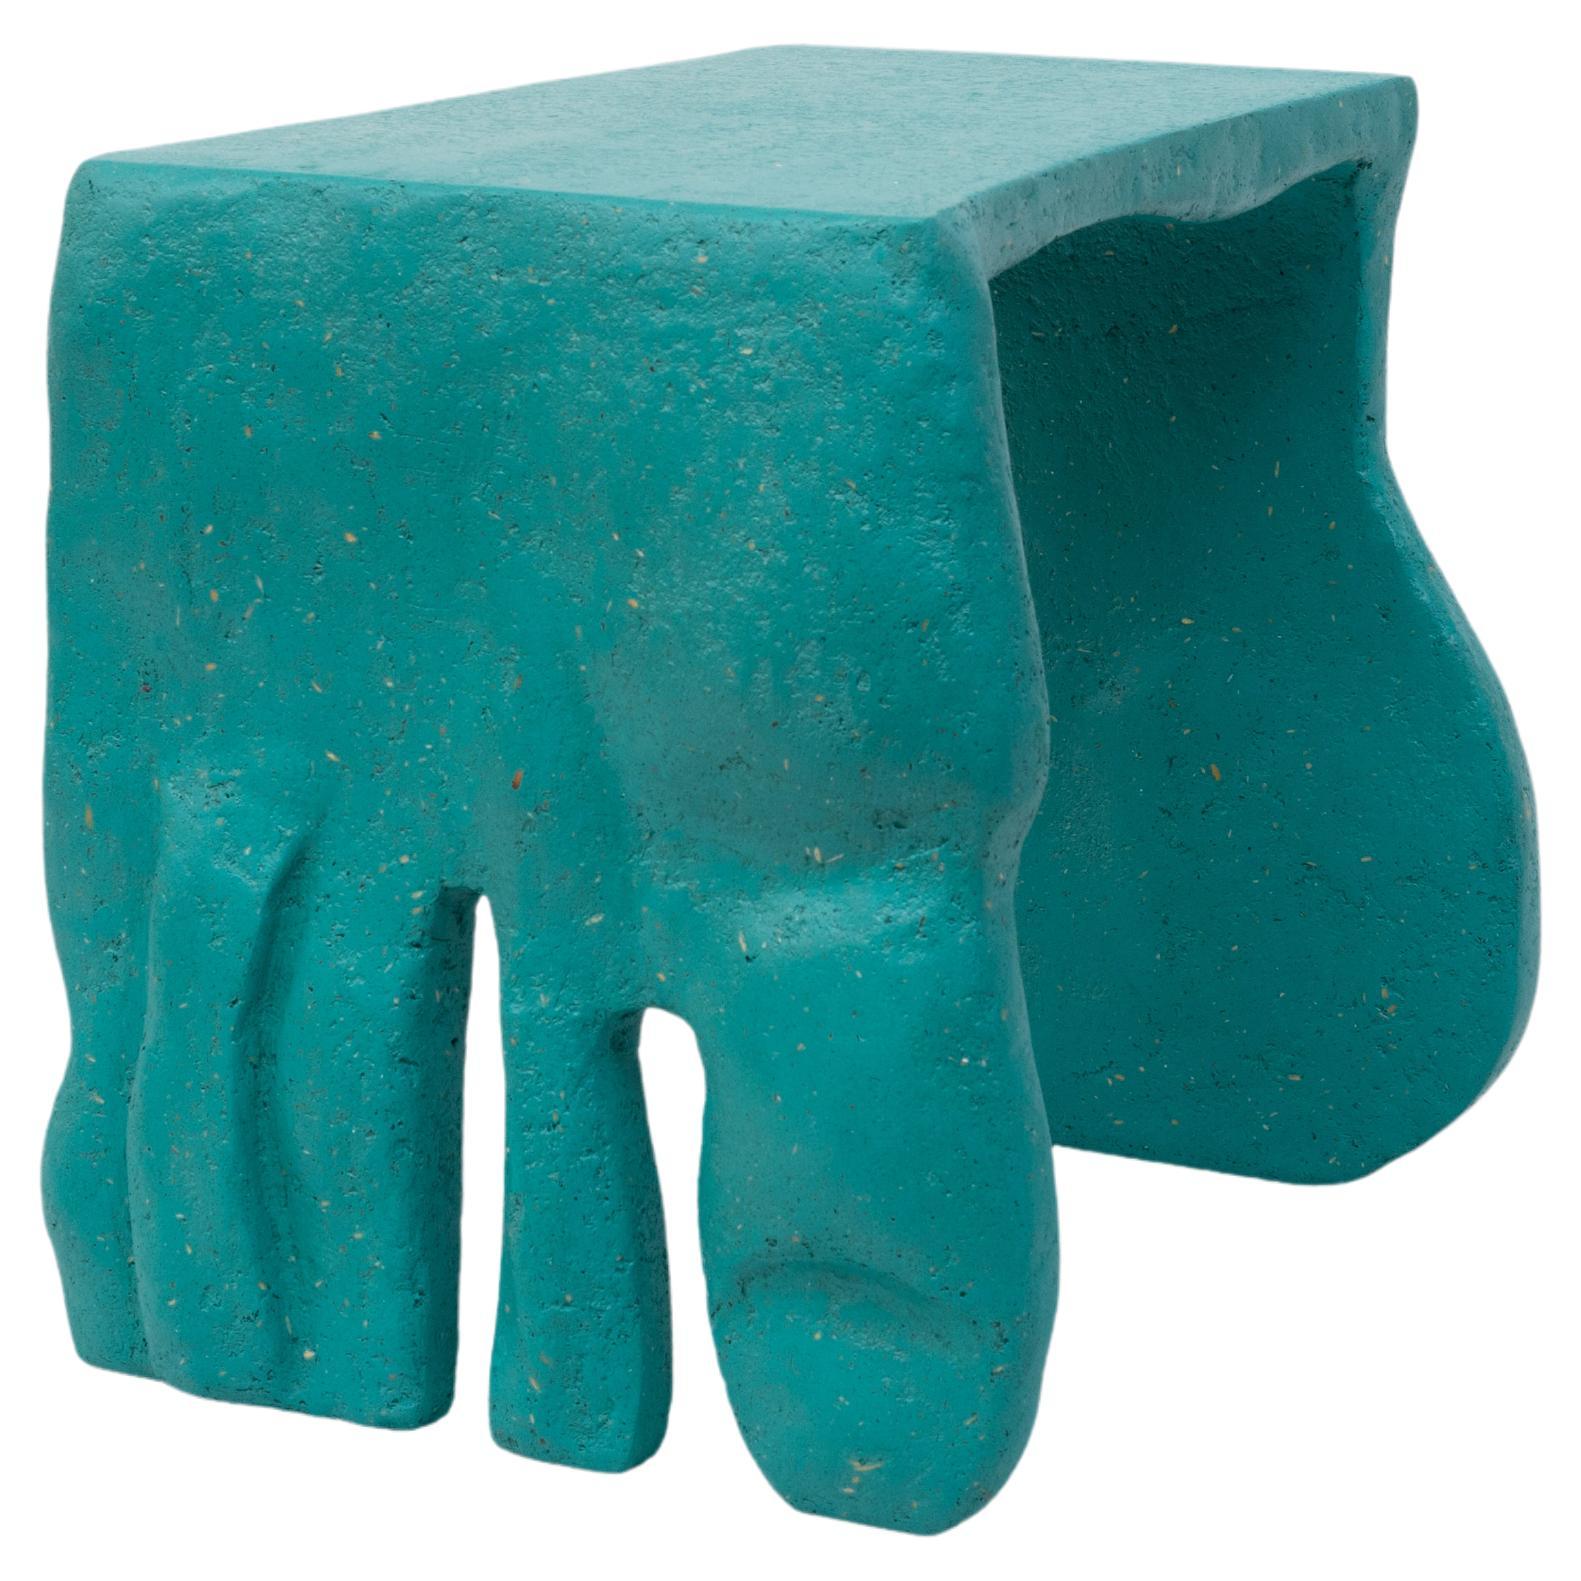 Barbora Žilinskaitė, "Roommates Stool [Turquoise]", 2020 For Sale